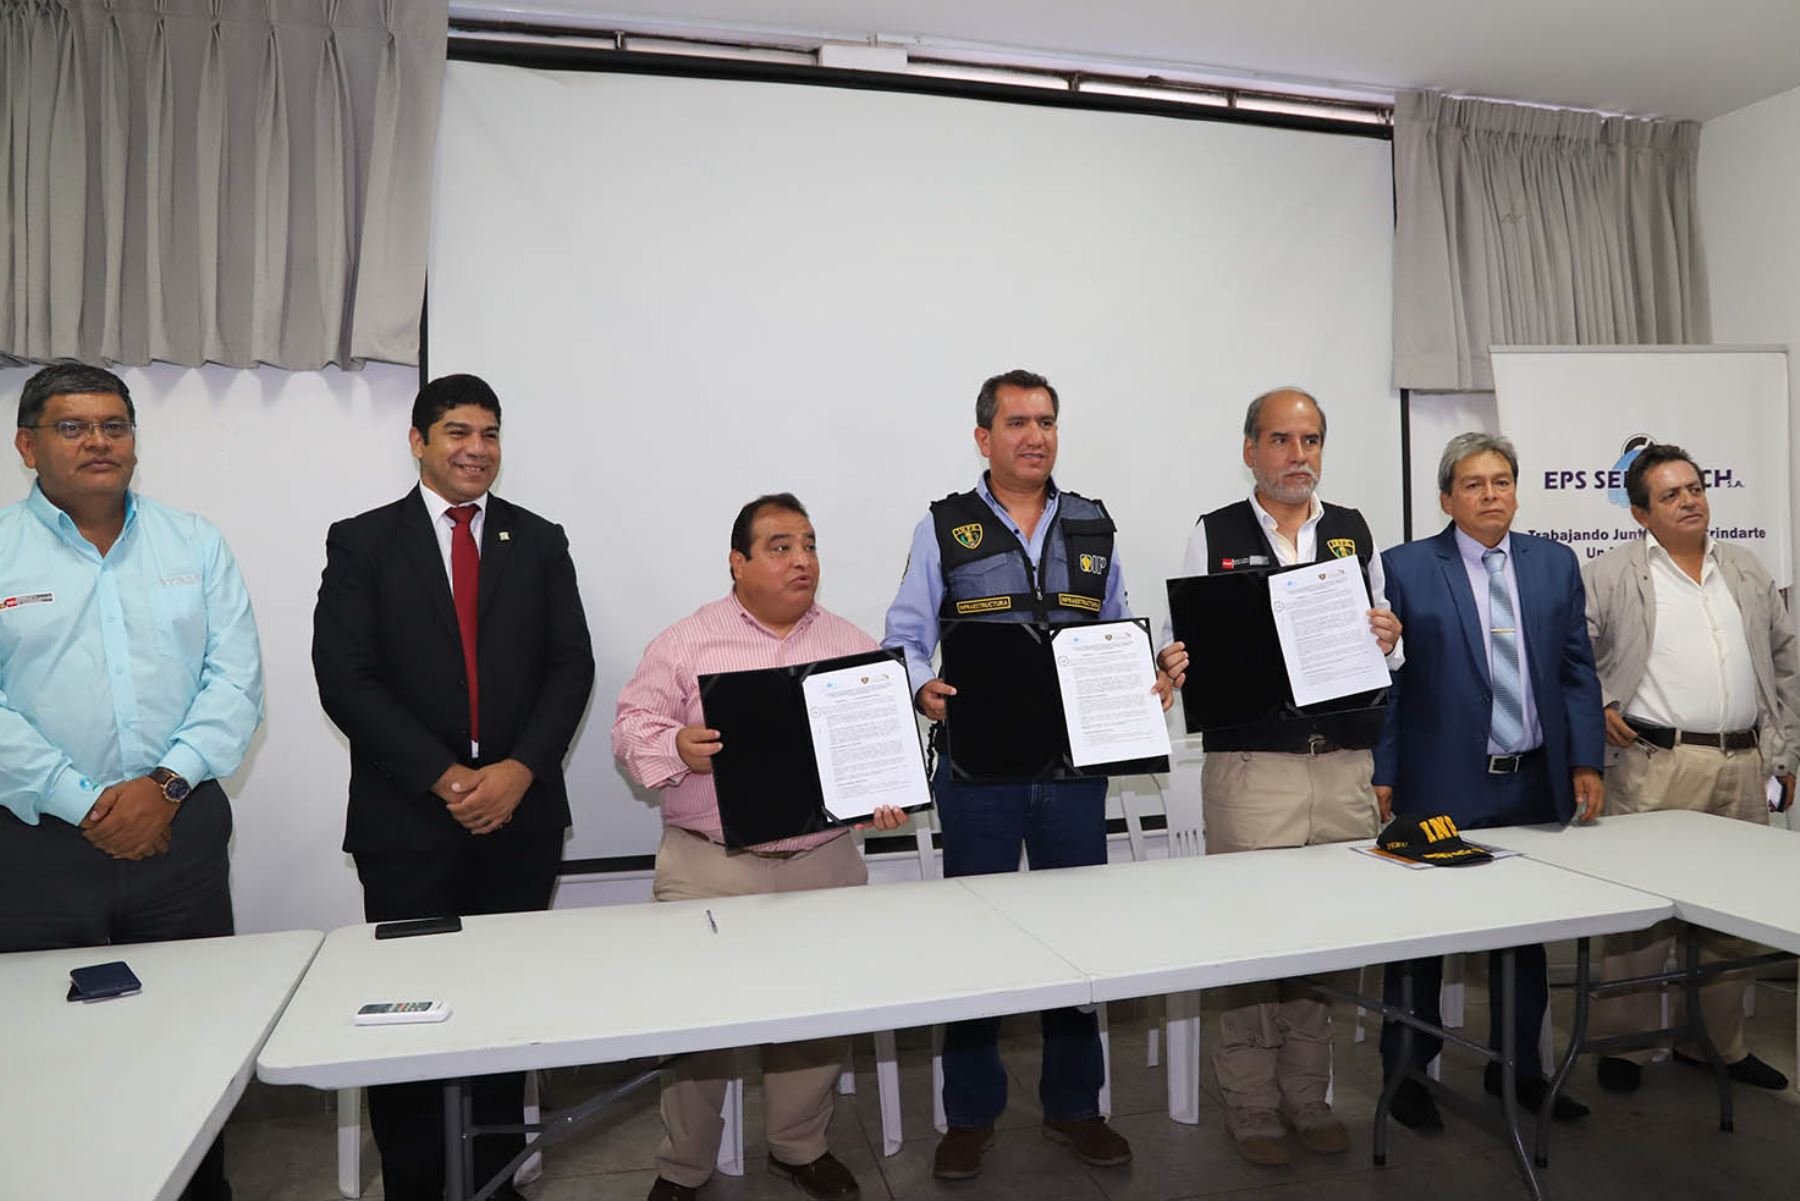 La EPS Semapach y el Inpe firmaron un convenio para ejecutar un proyecto de agua potable en el establecimiento penitenciario de Chincha.